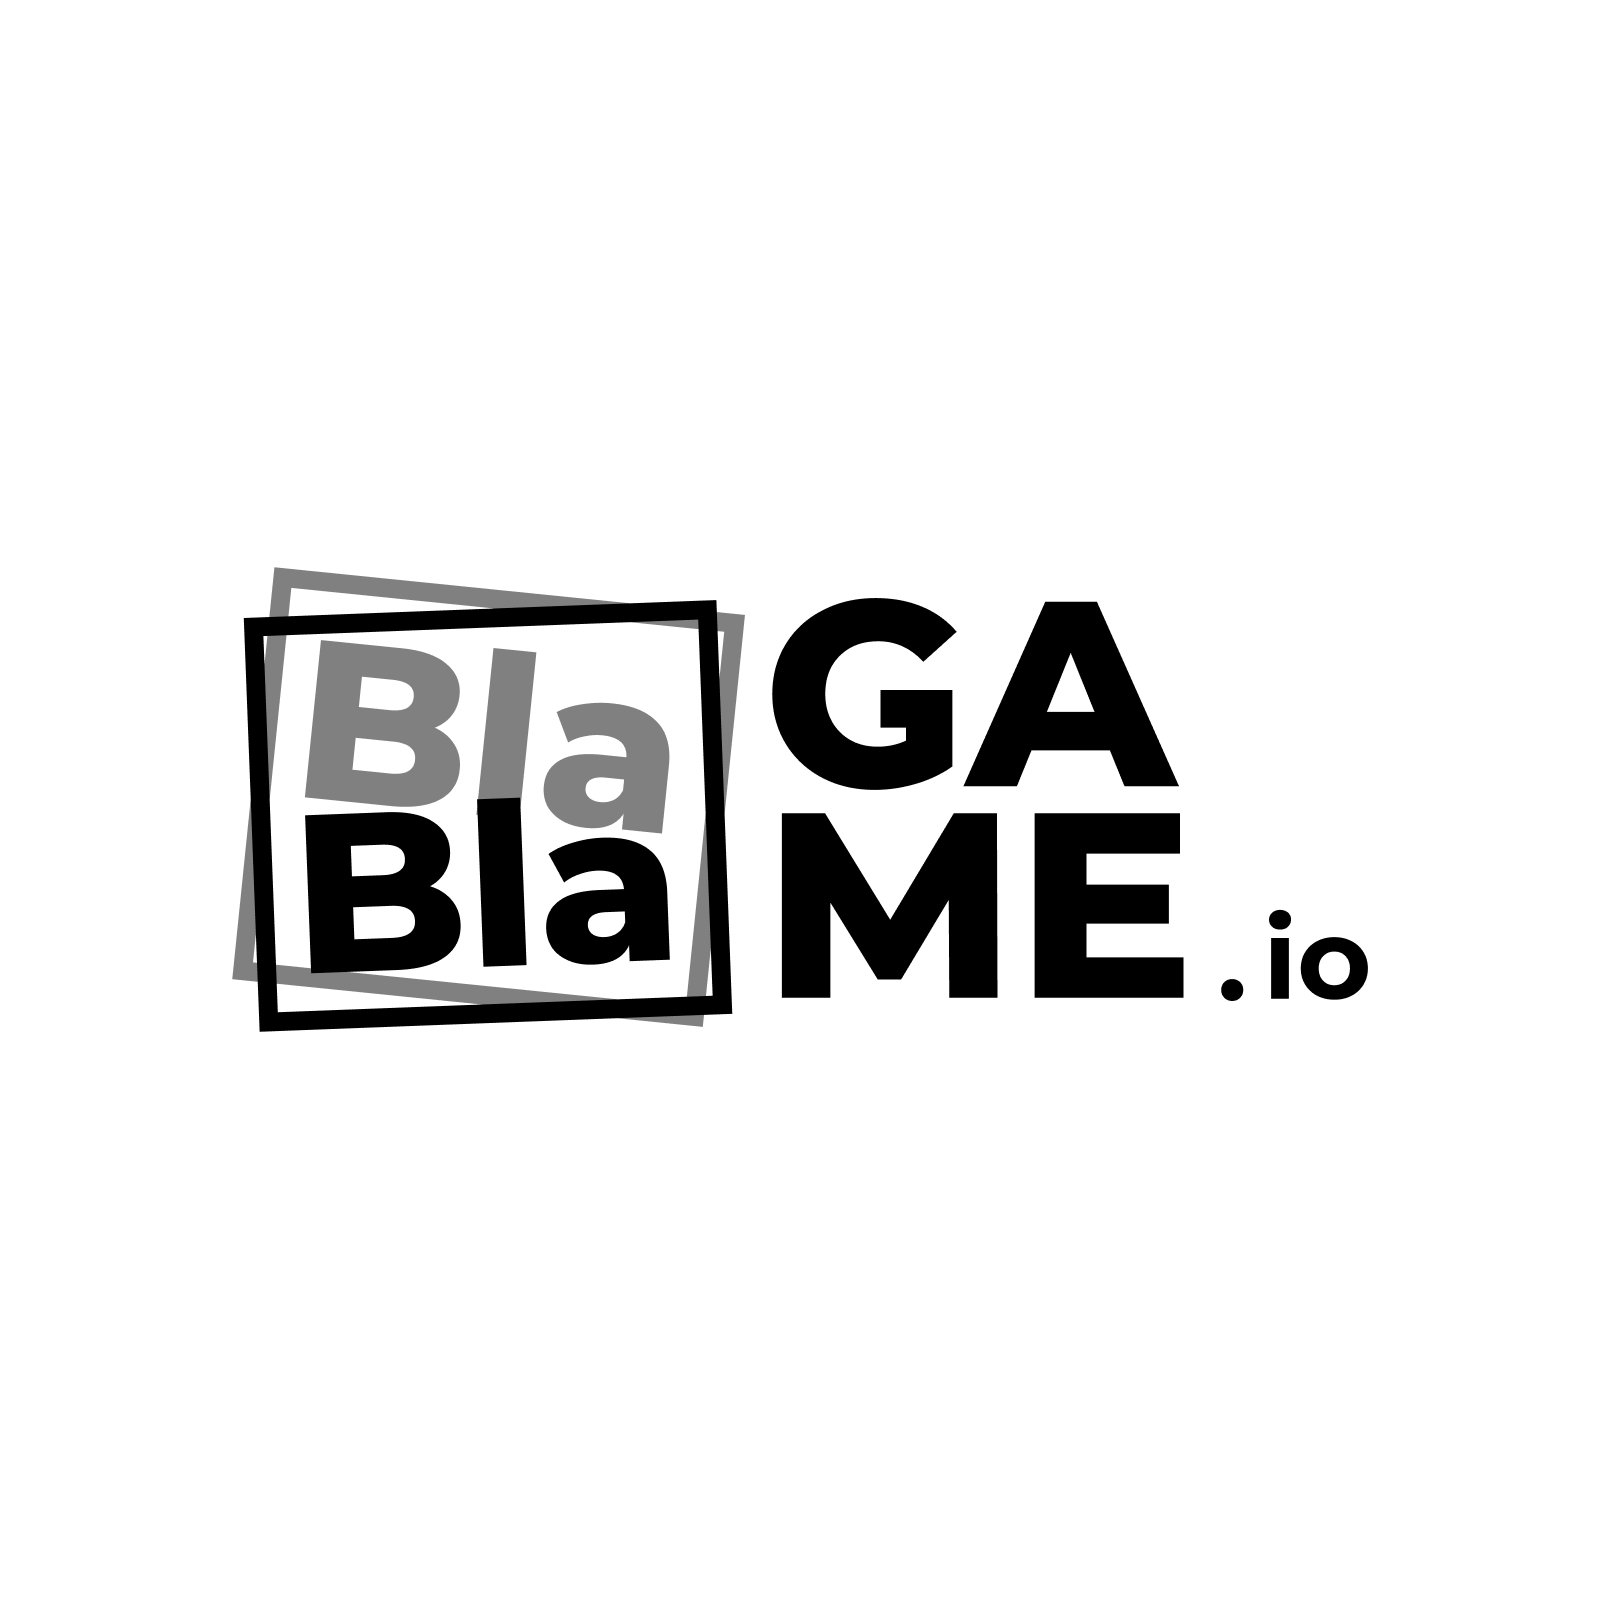 BlaBlaGame.io